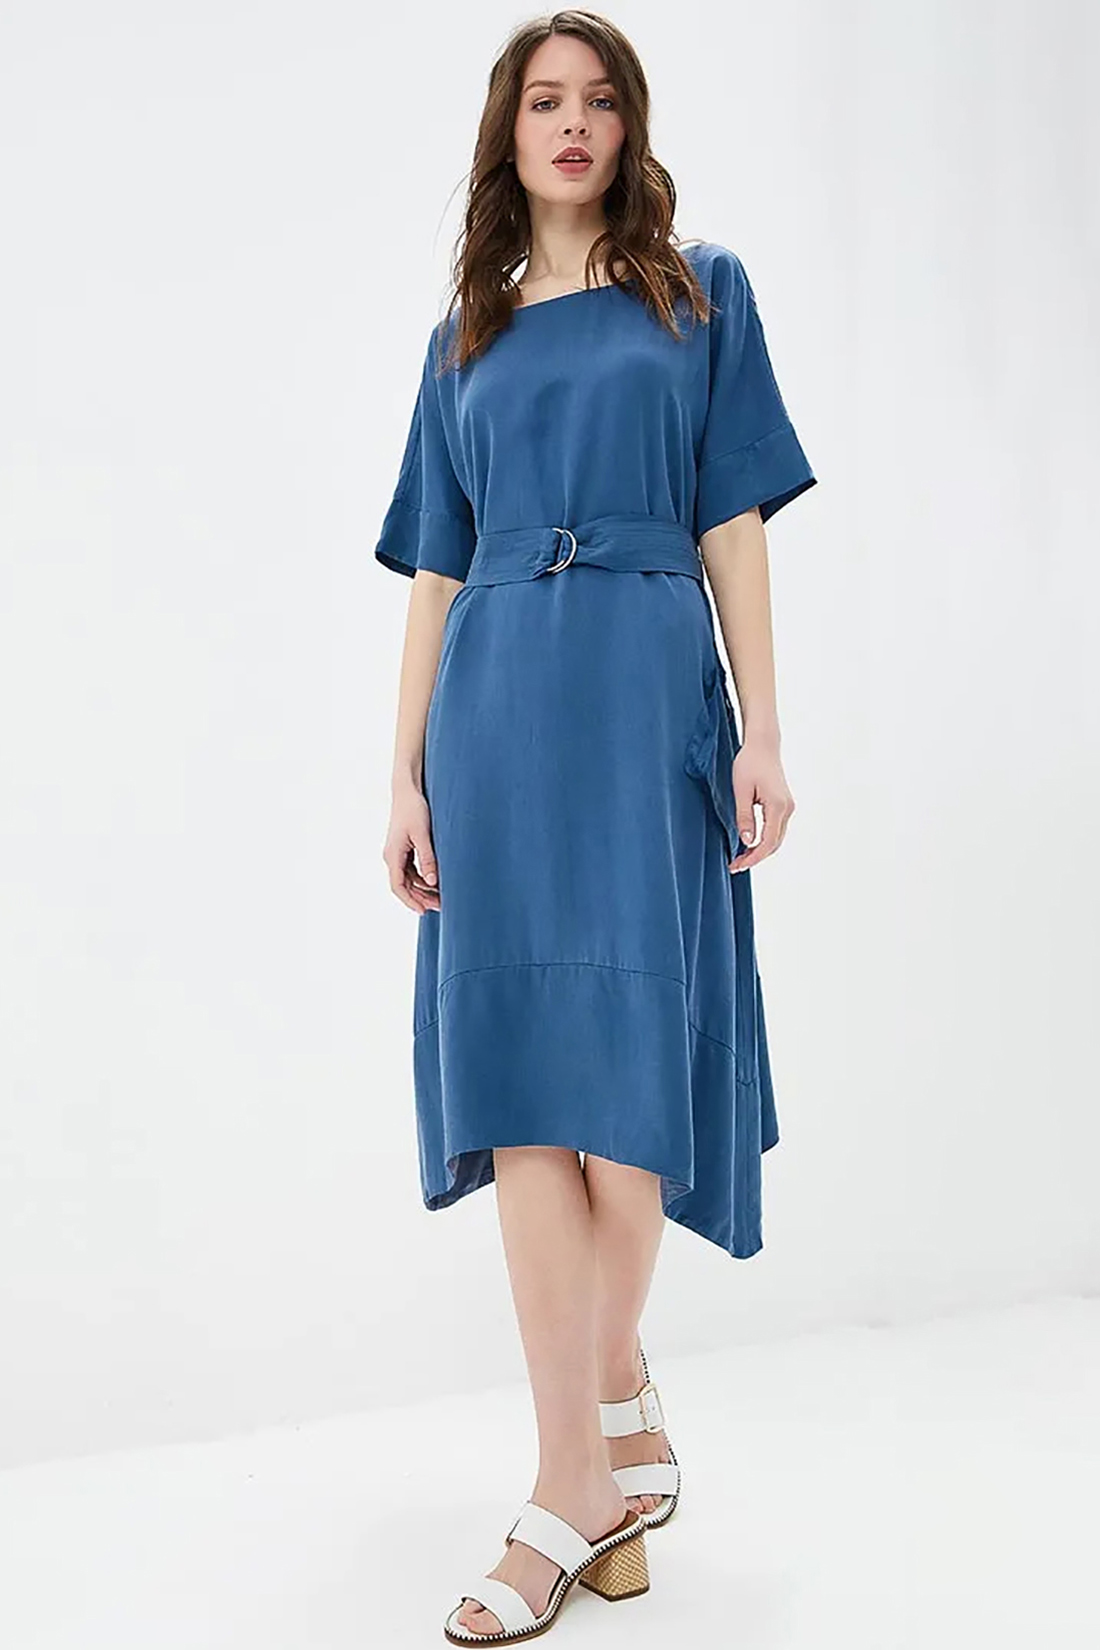 Платье с модным поясом (арт. baon B459060), размер XL, цвет синий Платье с модным поясом (арт. baon B459060) - фото 1